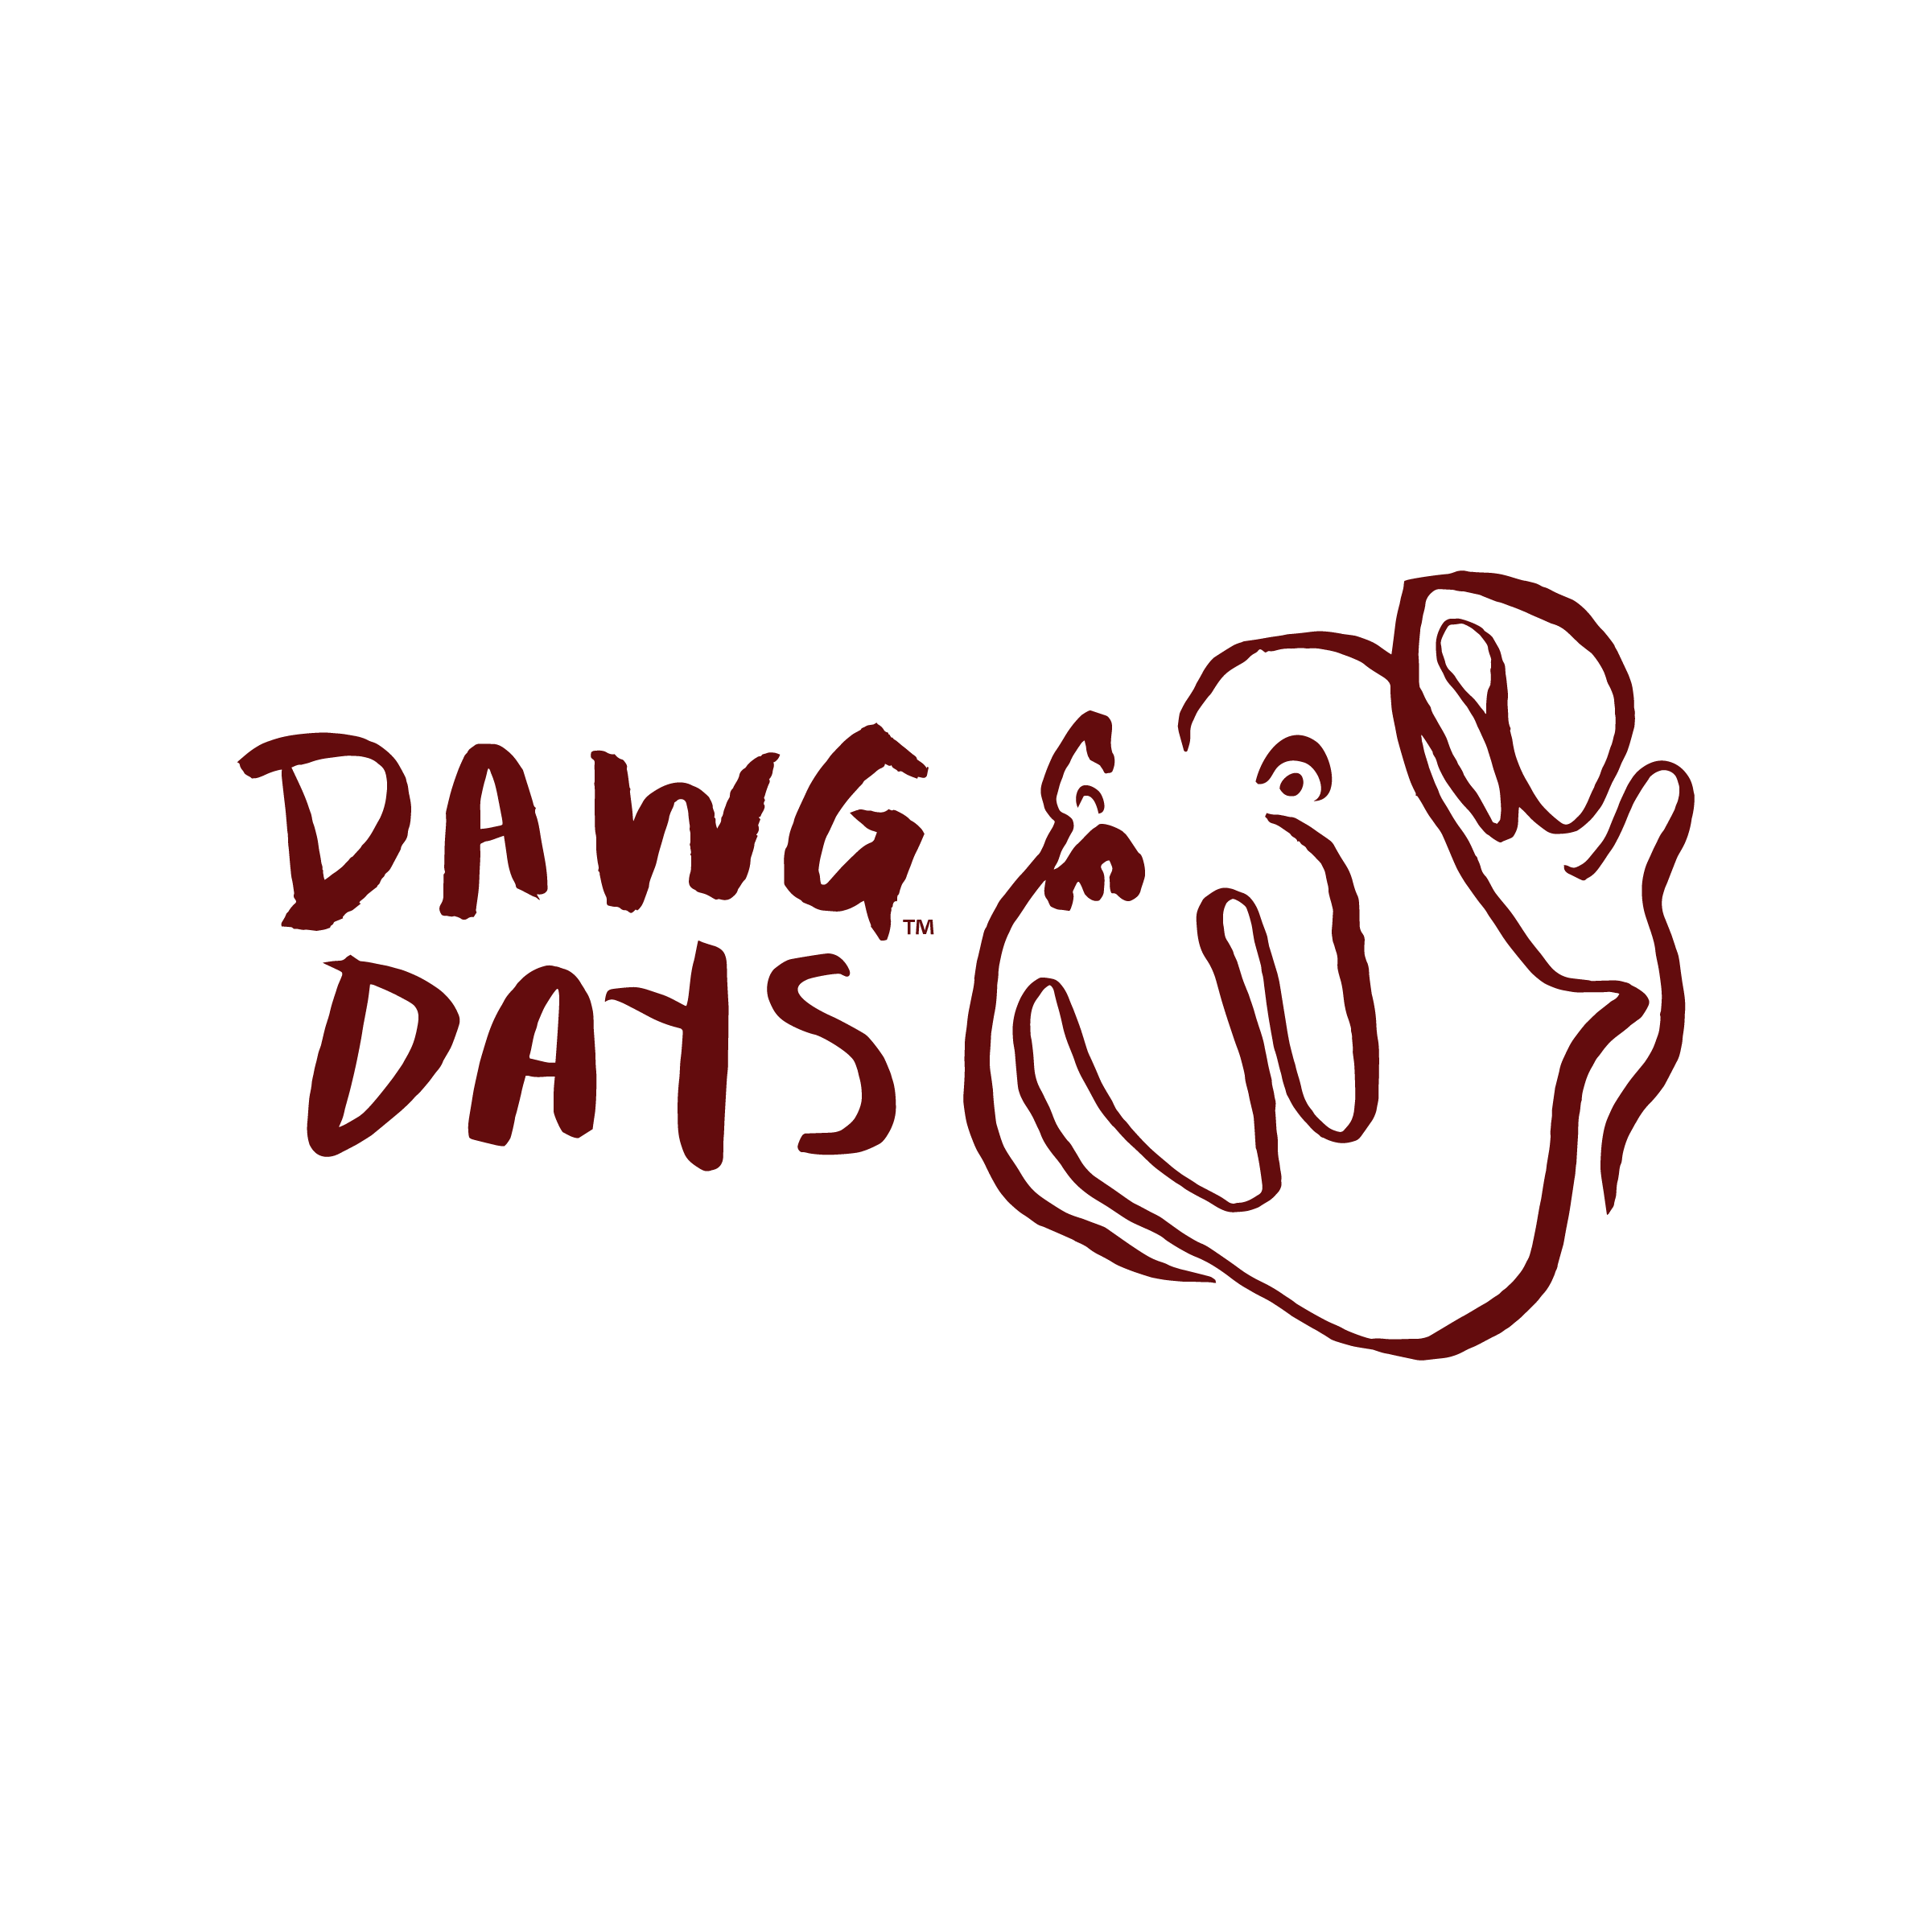 Dawg Days Logo